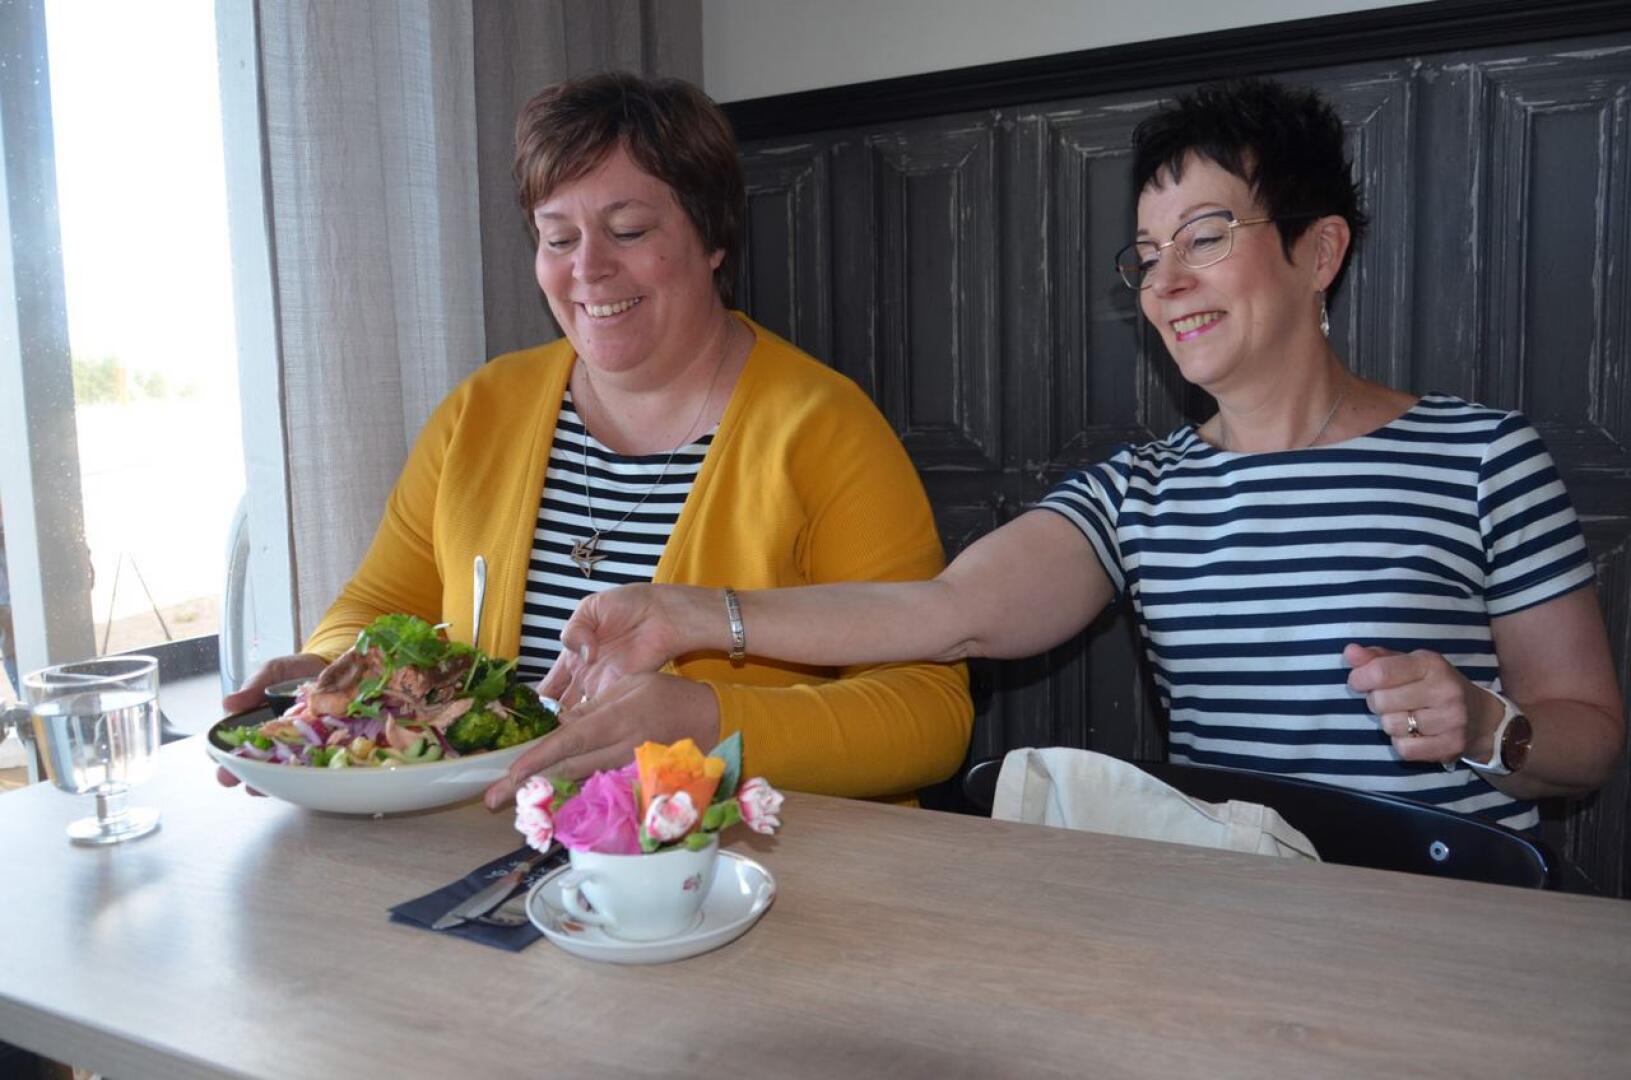 BeachRosessa kalajokinen Mari Paavola vastaanottamassa yrittäjä Minna Yrjänheikin tarjoileman salaattiannoksen. Paavola alkoi käydä Yrjänheikin Hiekkasärkkien rannan ravintolakahvilassa heti, kun se oli kesäkuussa mahdollista.